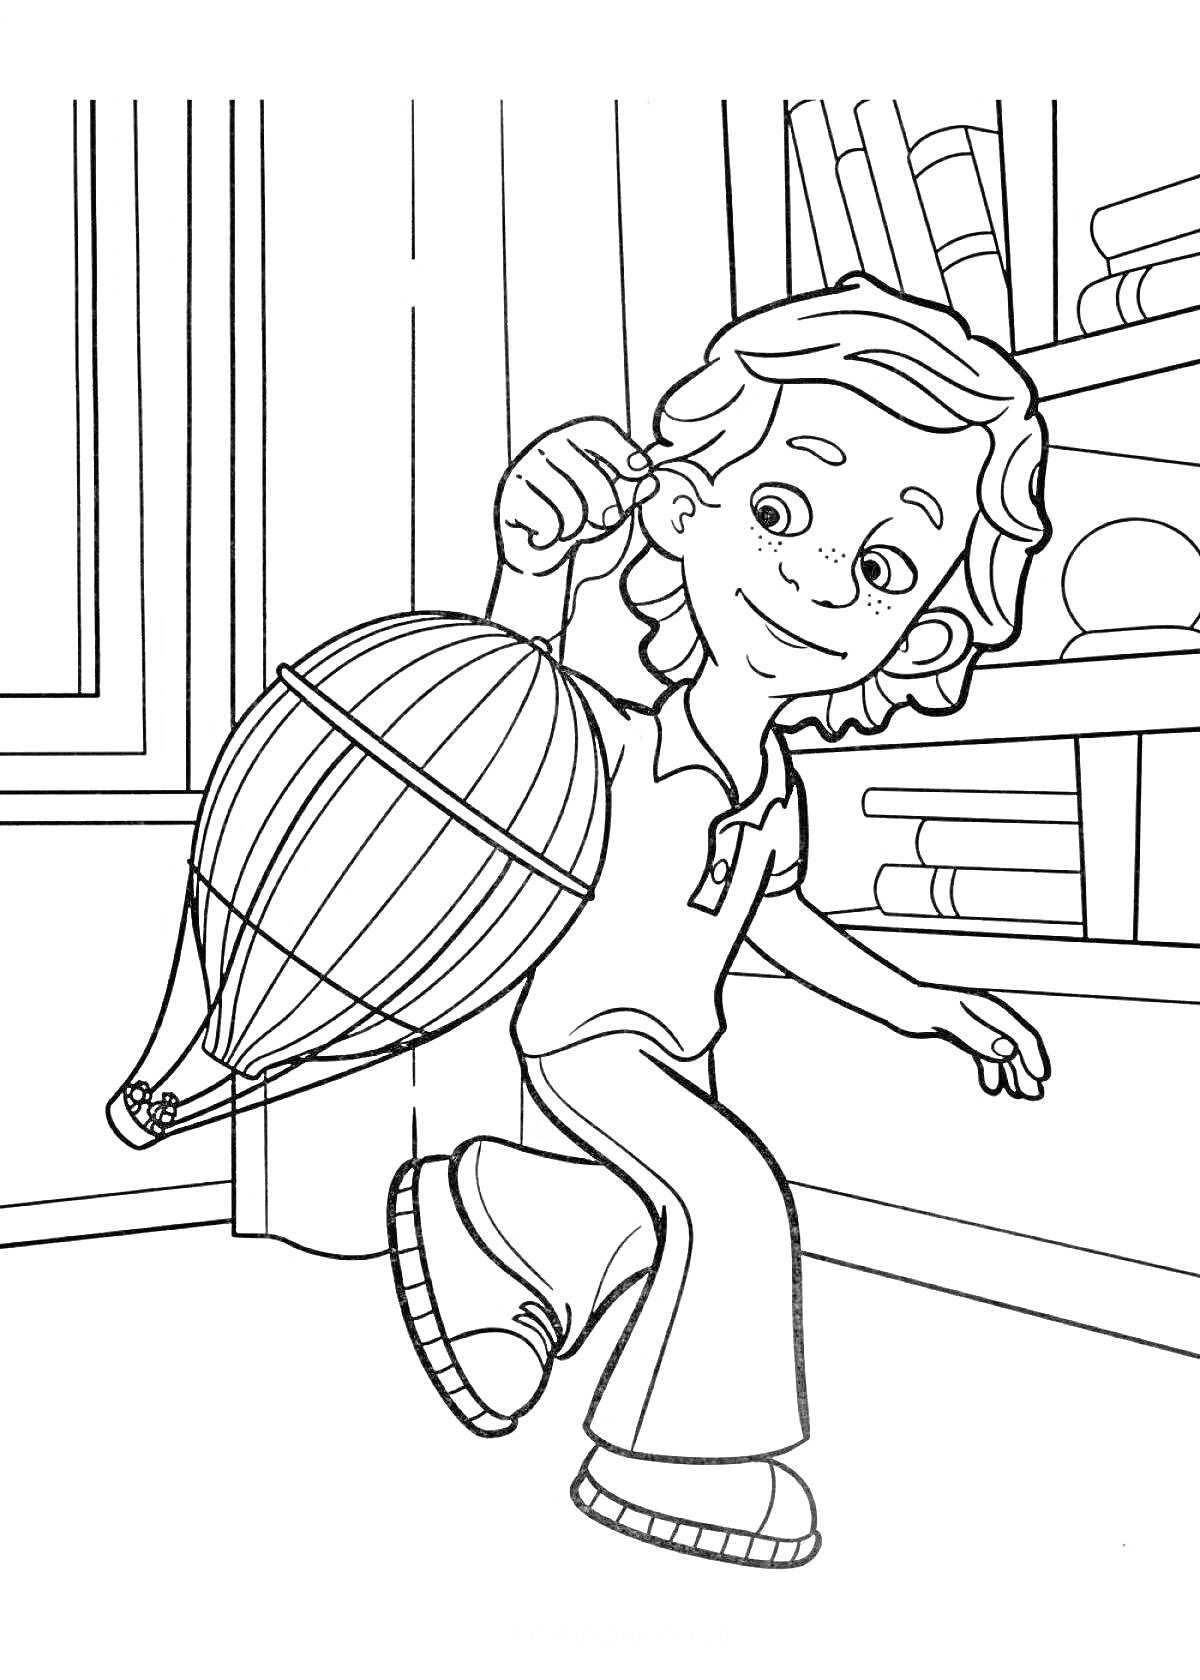 Мальчик с воздушным шариком в помещении рядом с книжными полками